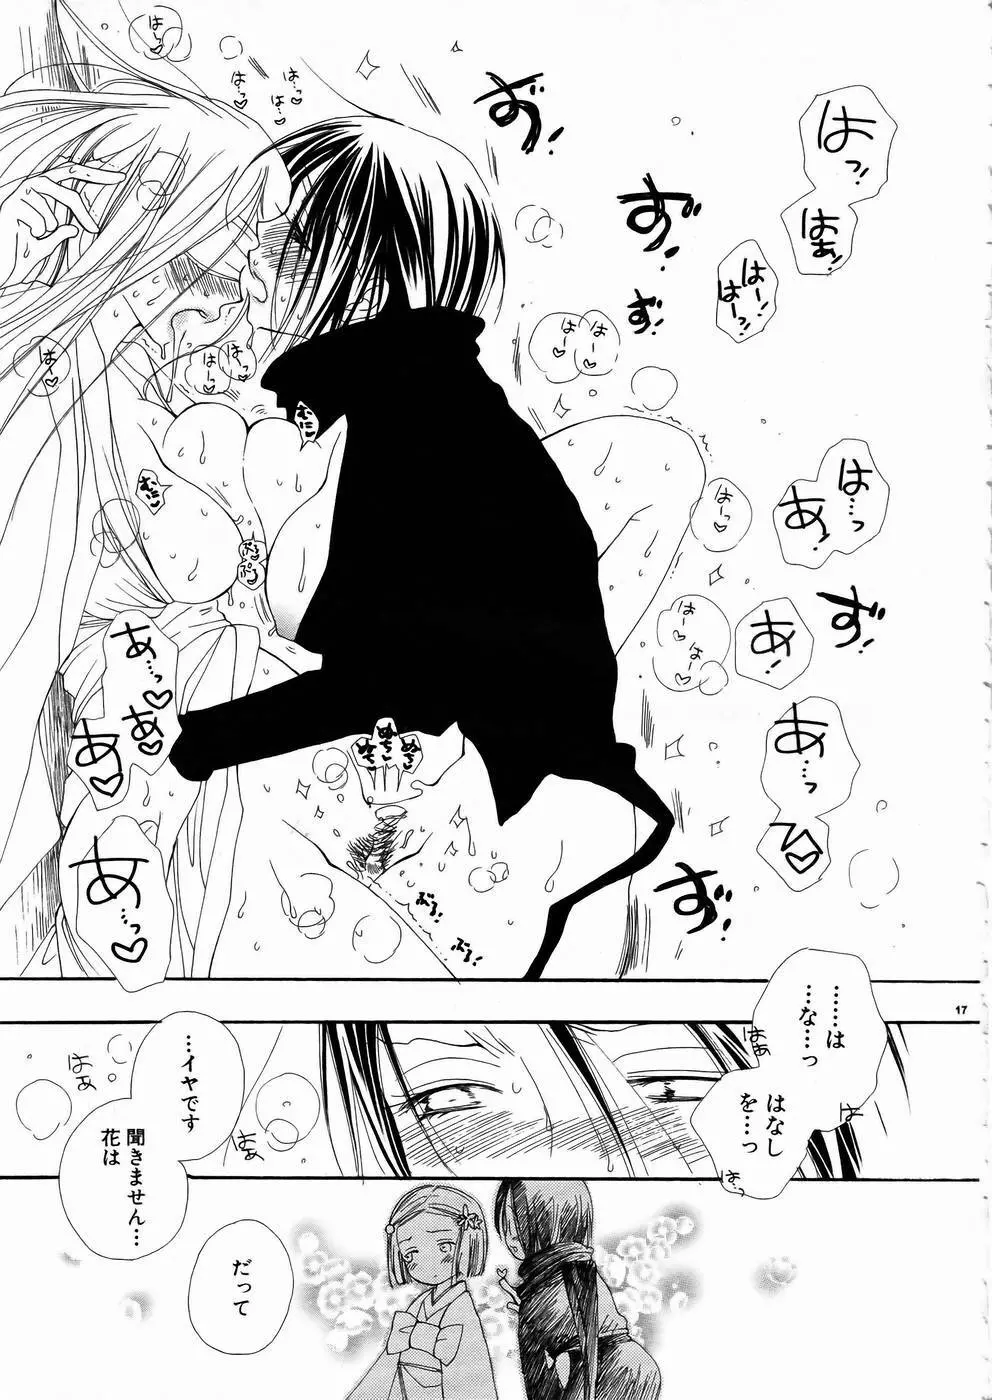 少女剣客凌辱コミック Vol.01 くノ一斬! 16ページ